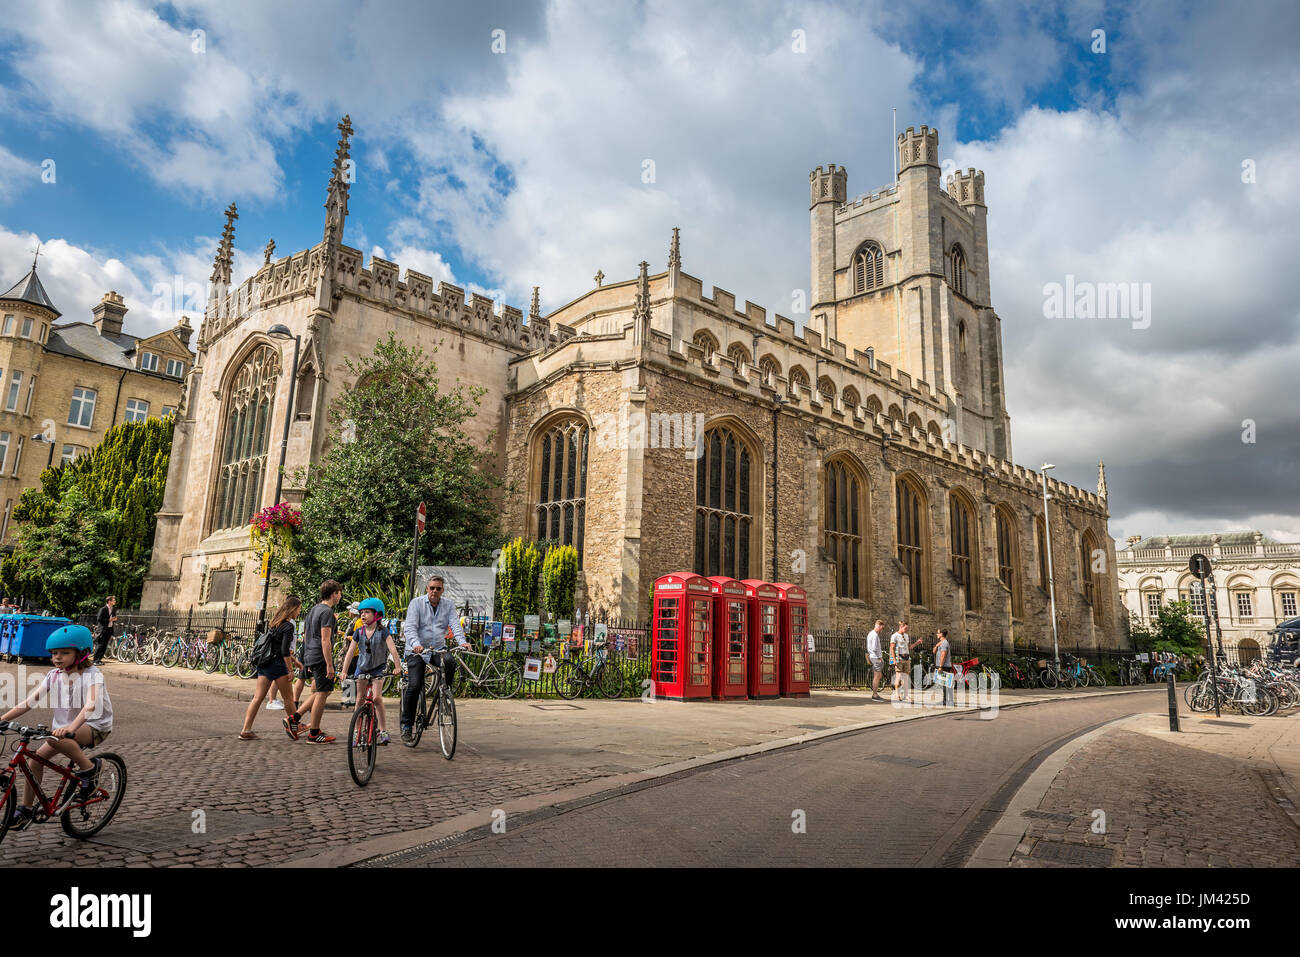 Une famille sur les bicyclettes à travers Cambridge près de l'église de Saint Mary's, le Grand sur St Mary's Street, Cambridge, Royaume-Uni Banque D'Images